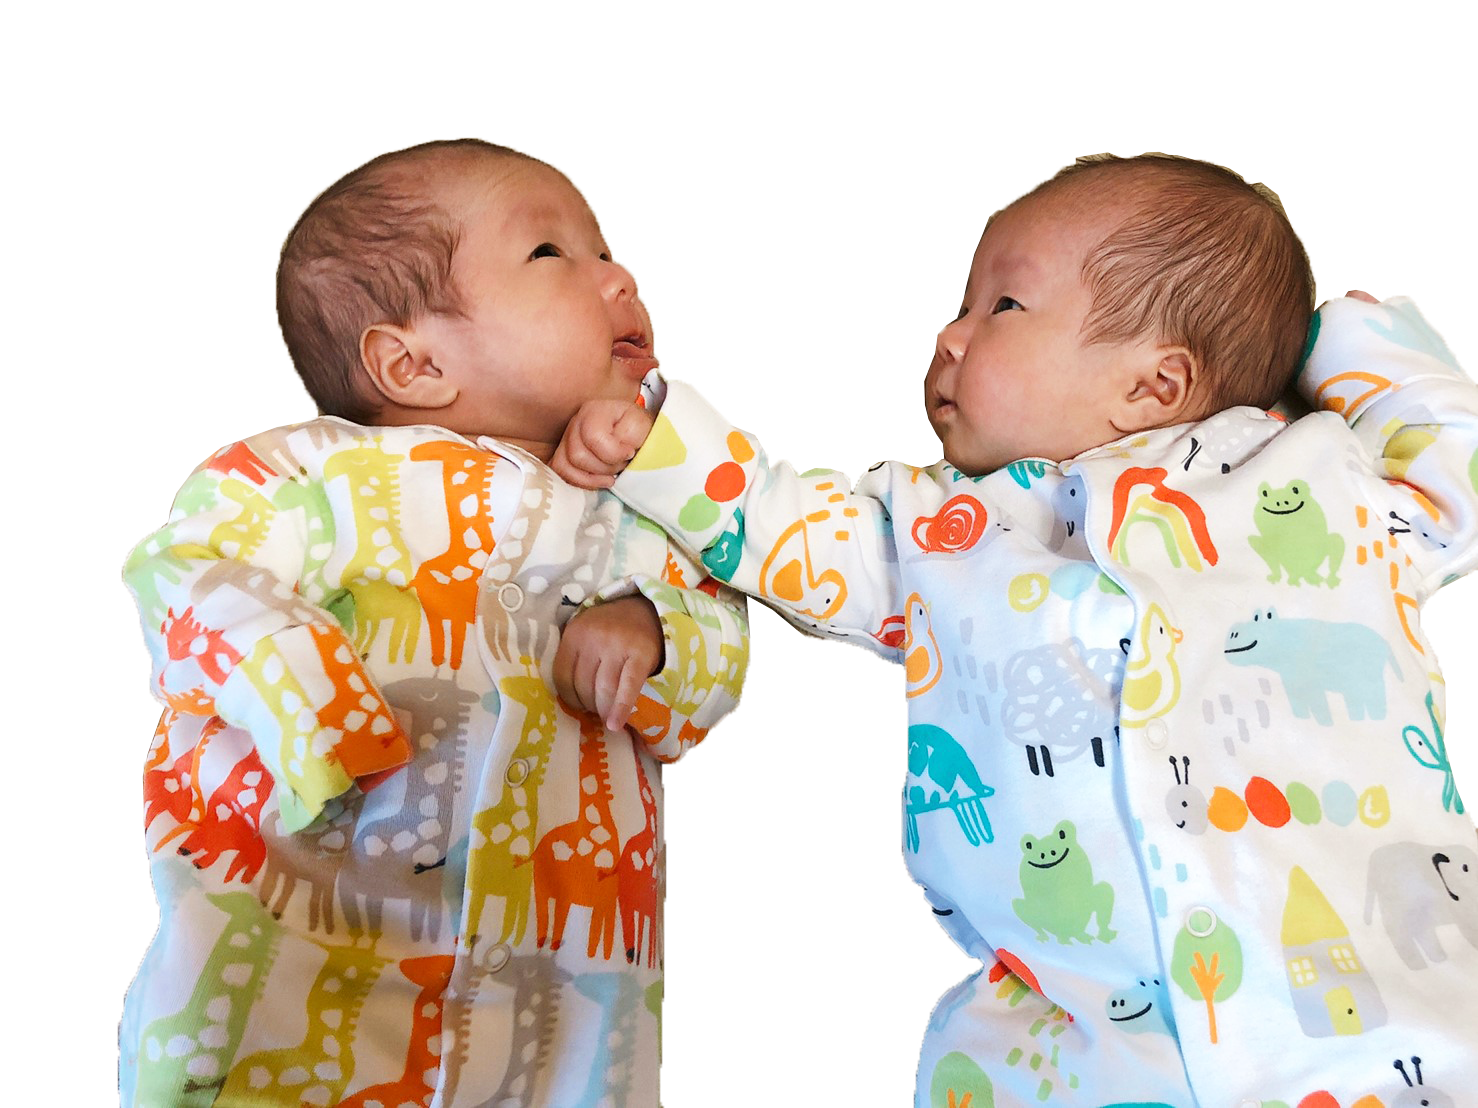 第2回撮影秘話 双子妊娠とお腹の大きさの変化 前編 顔や仕草もそっくり 一卵性双生児 ミルク量 睡眠量 体重などデータ公開 楽天ブログ